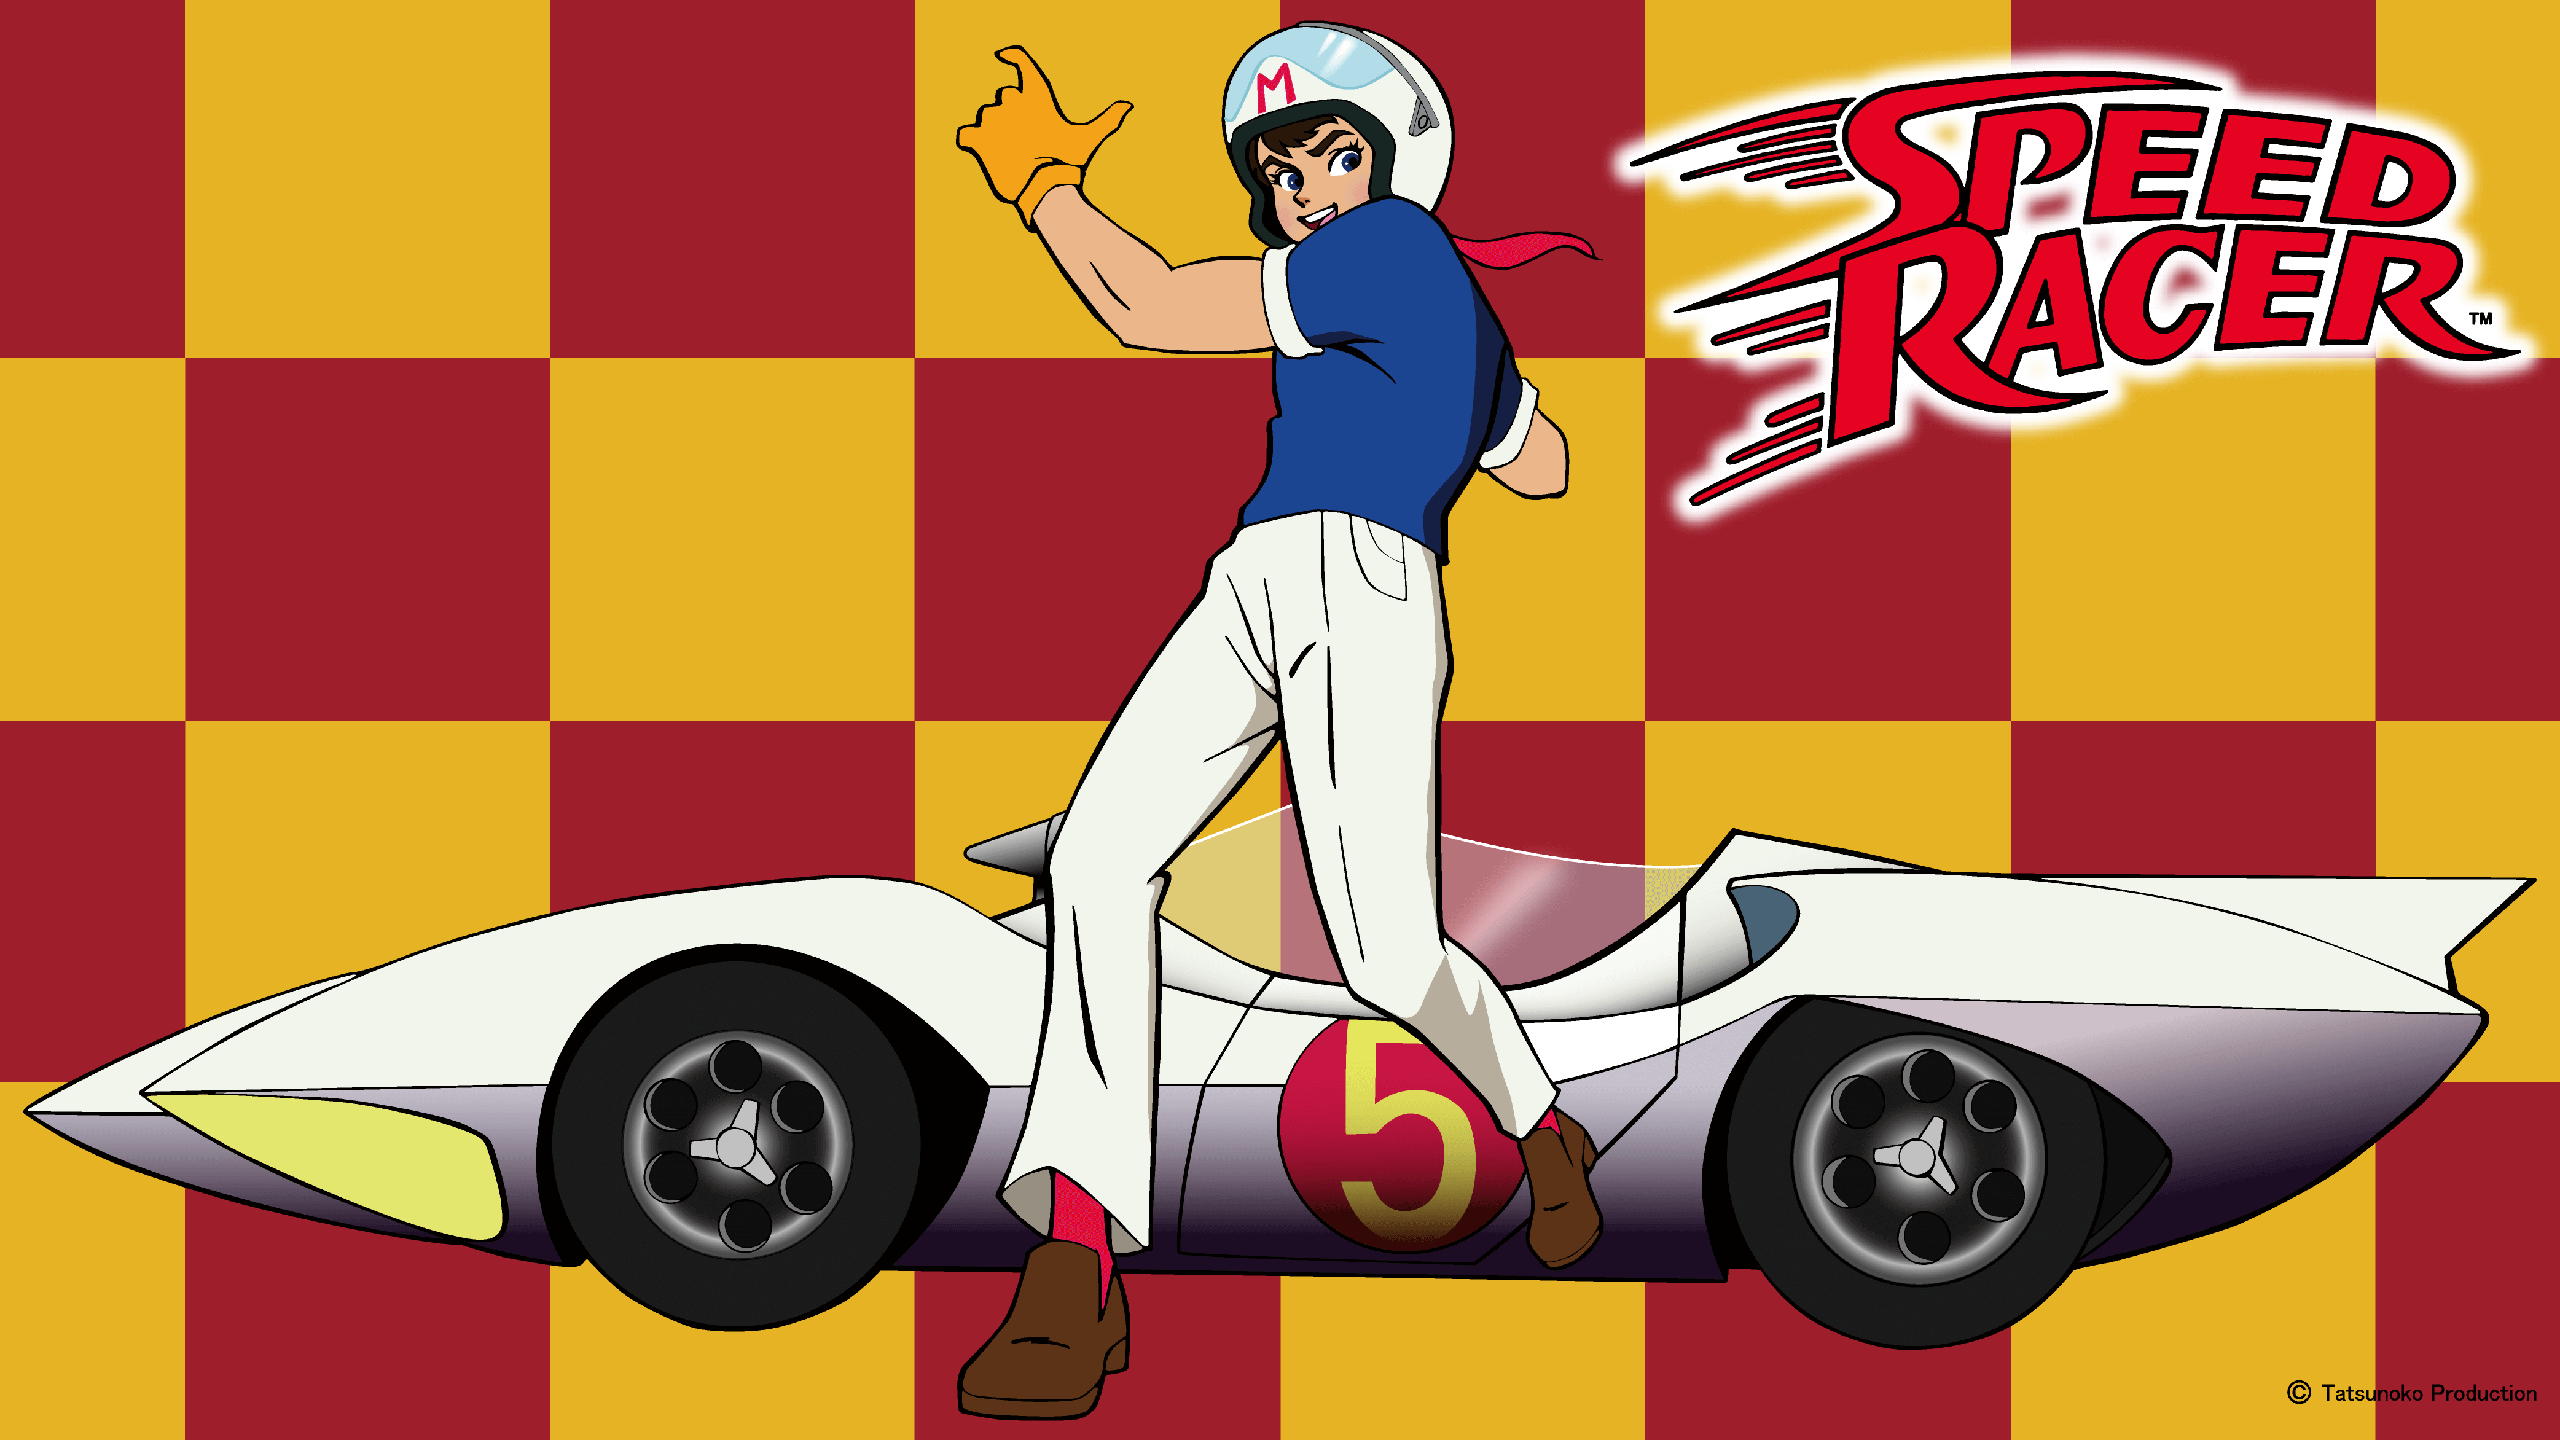 MACH GO GO GO (SPEED RACER)